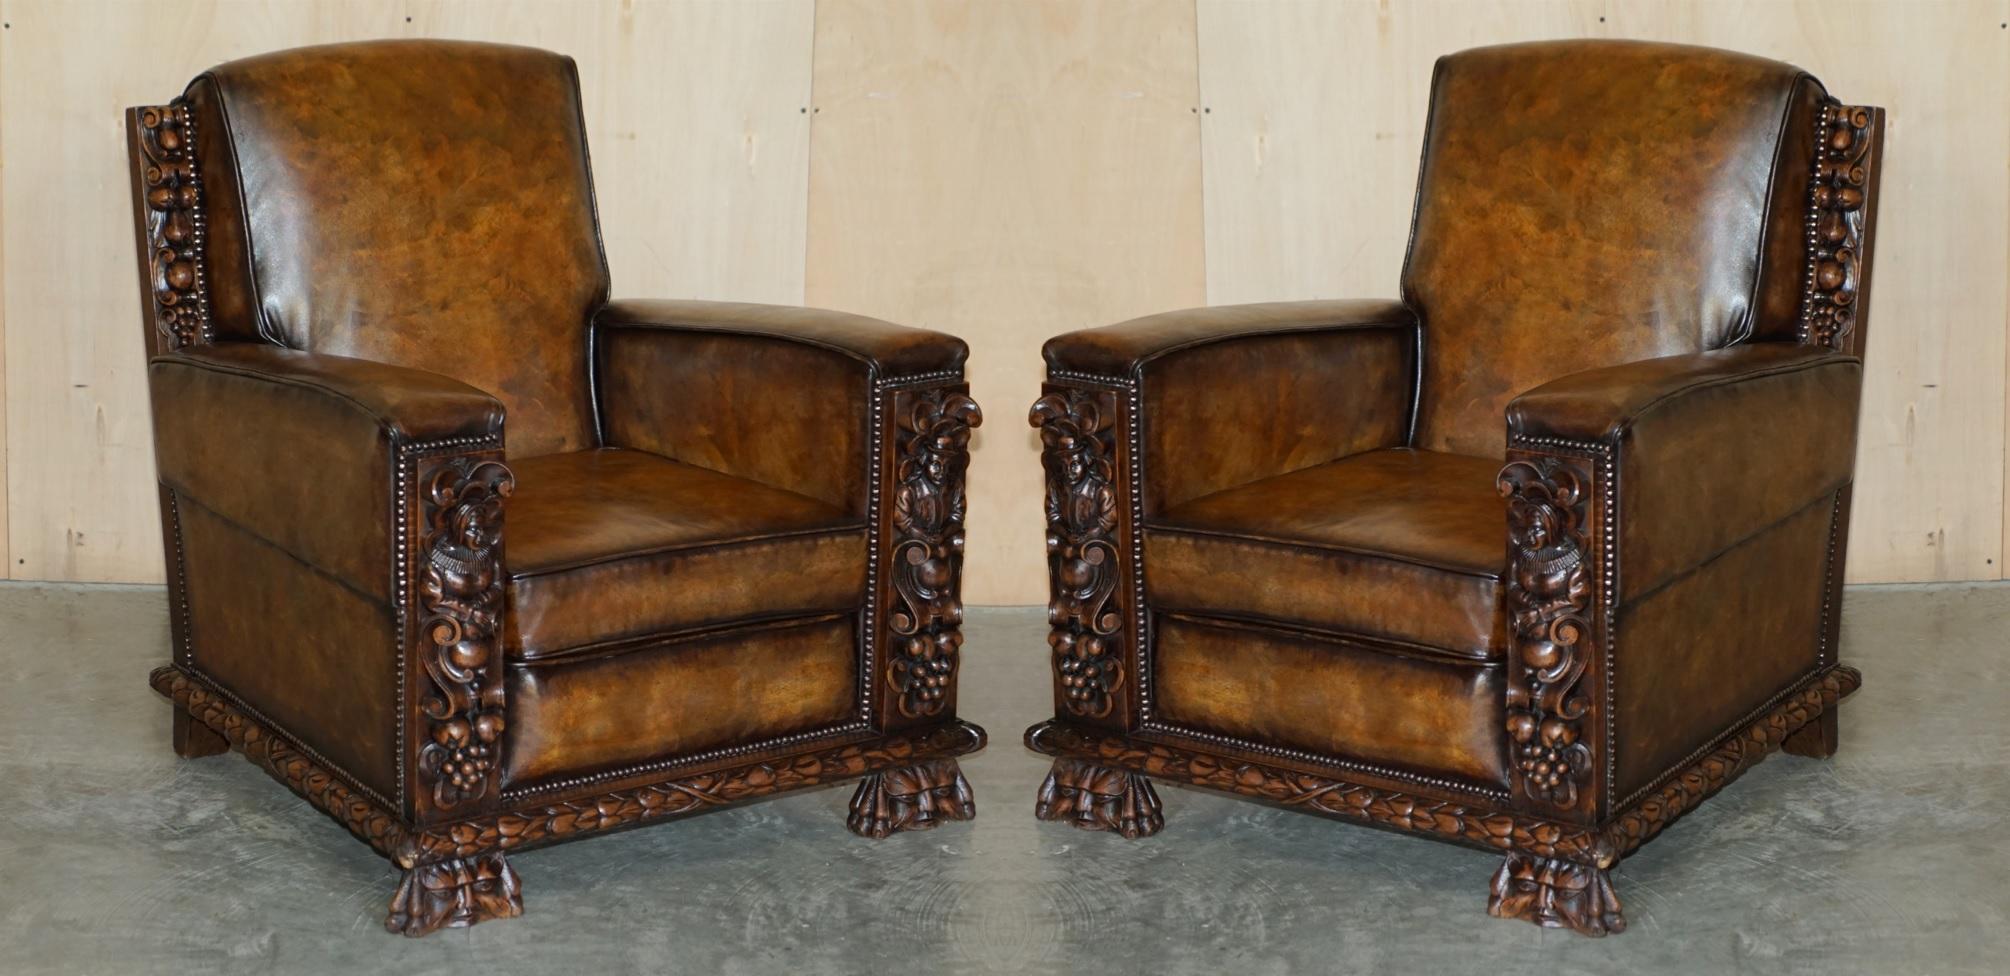 Royal House Antiques

The House Antiques a le plaisir de proposer à la vente quatre superbes fauteuils club en cuir marron teint à la main avec panneaux sculptés de style gothique, entièrement restaurés. 

Veuillez noter que les frais de livraison